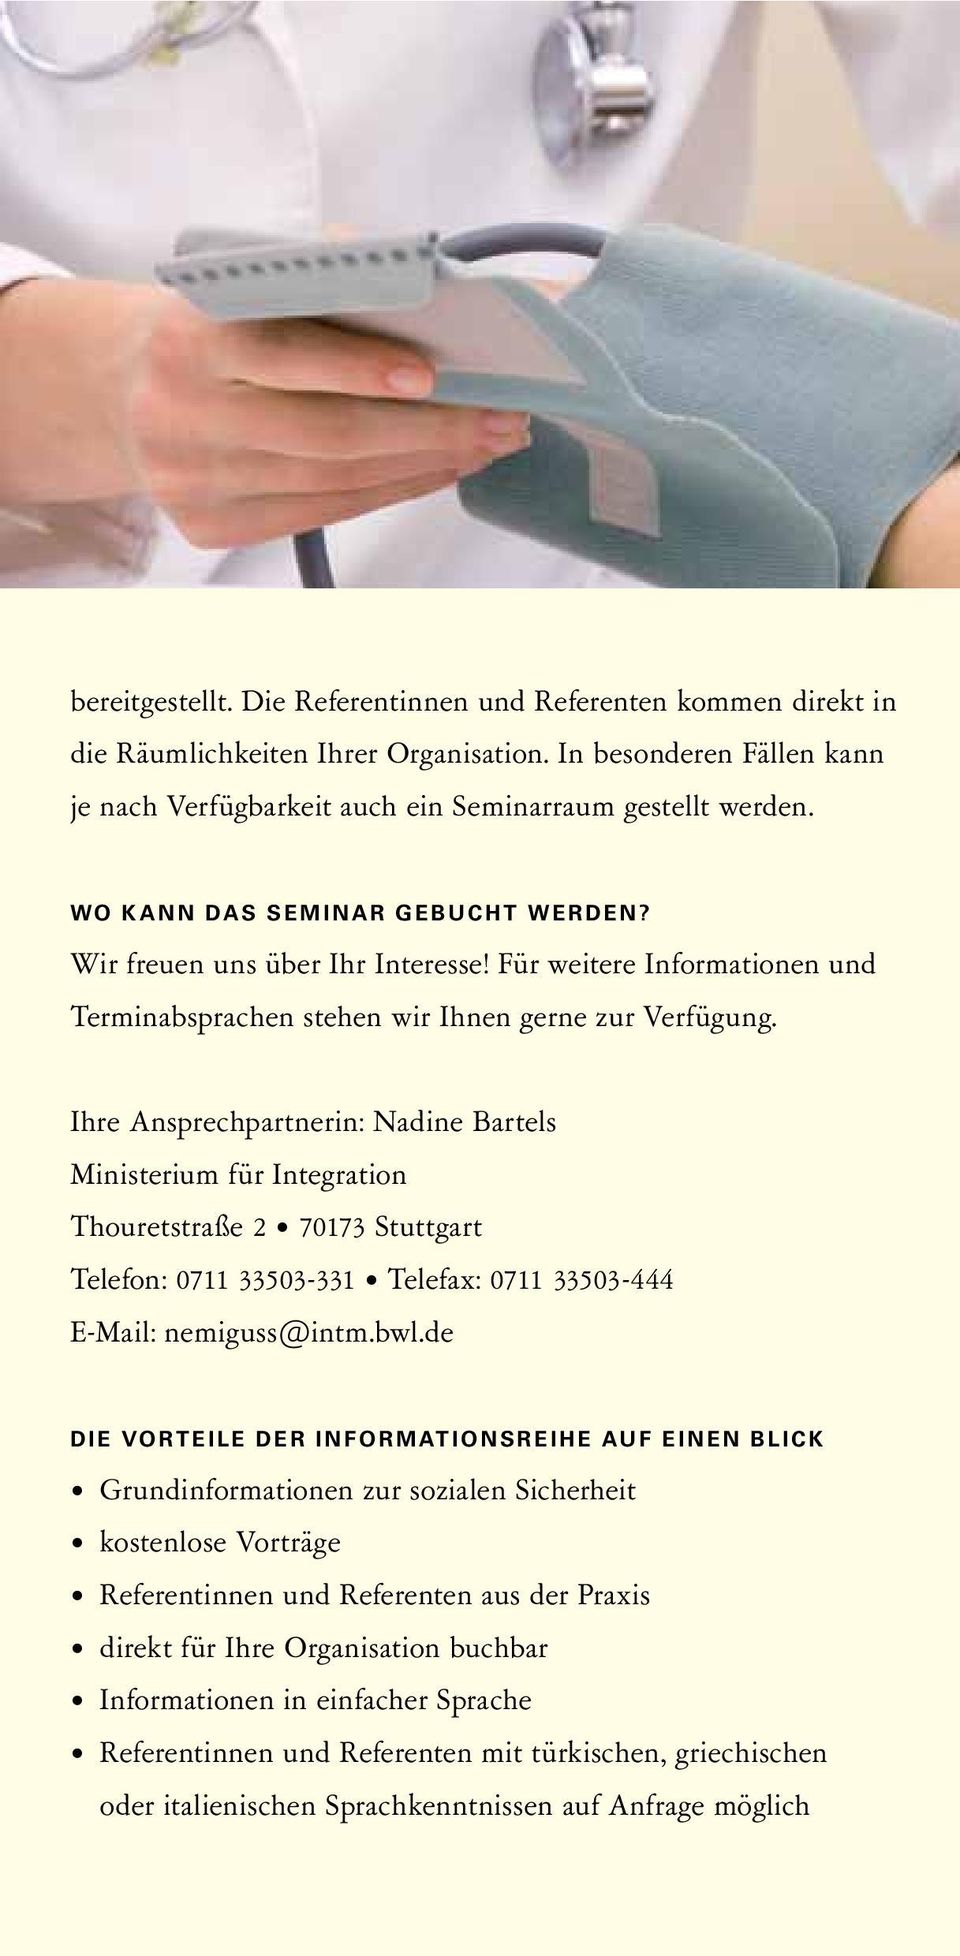 Ihre Ansprechpartnerin: Nadine Bartels Ministerium für Integration Thouretstraße 2 70173 Stuttgart Telefon: 0711 33503-331 Telefax: 0711 33503-444 E-Mail: nemiguss@intm.bwl.